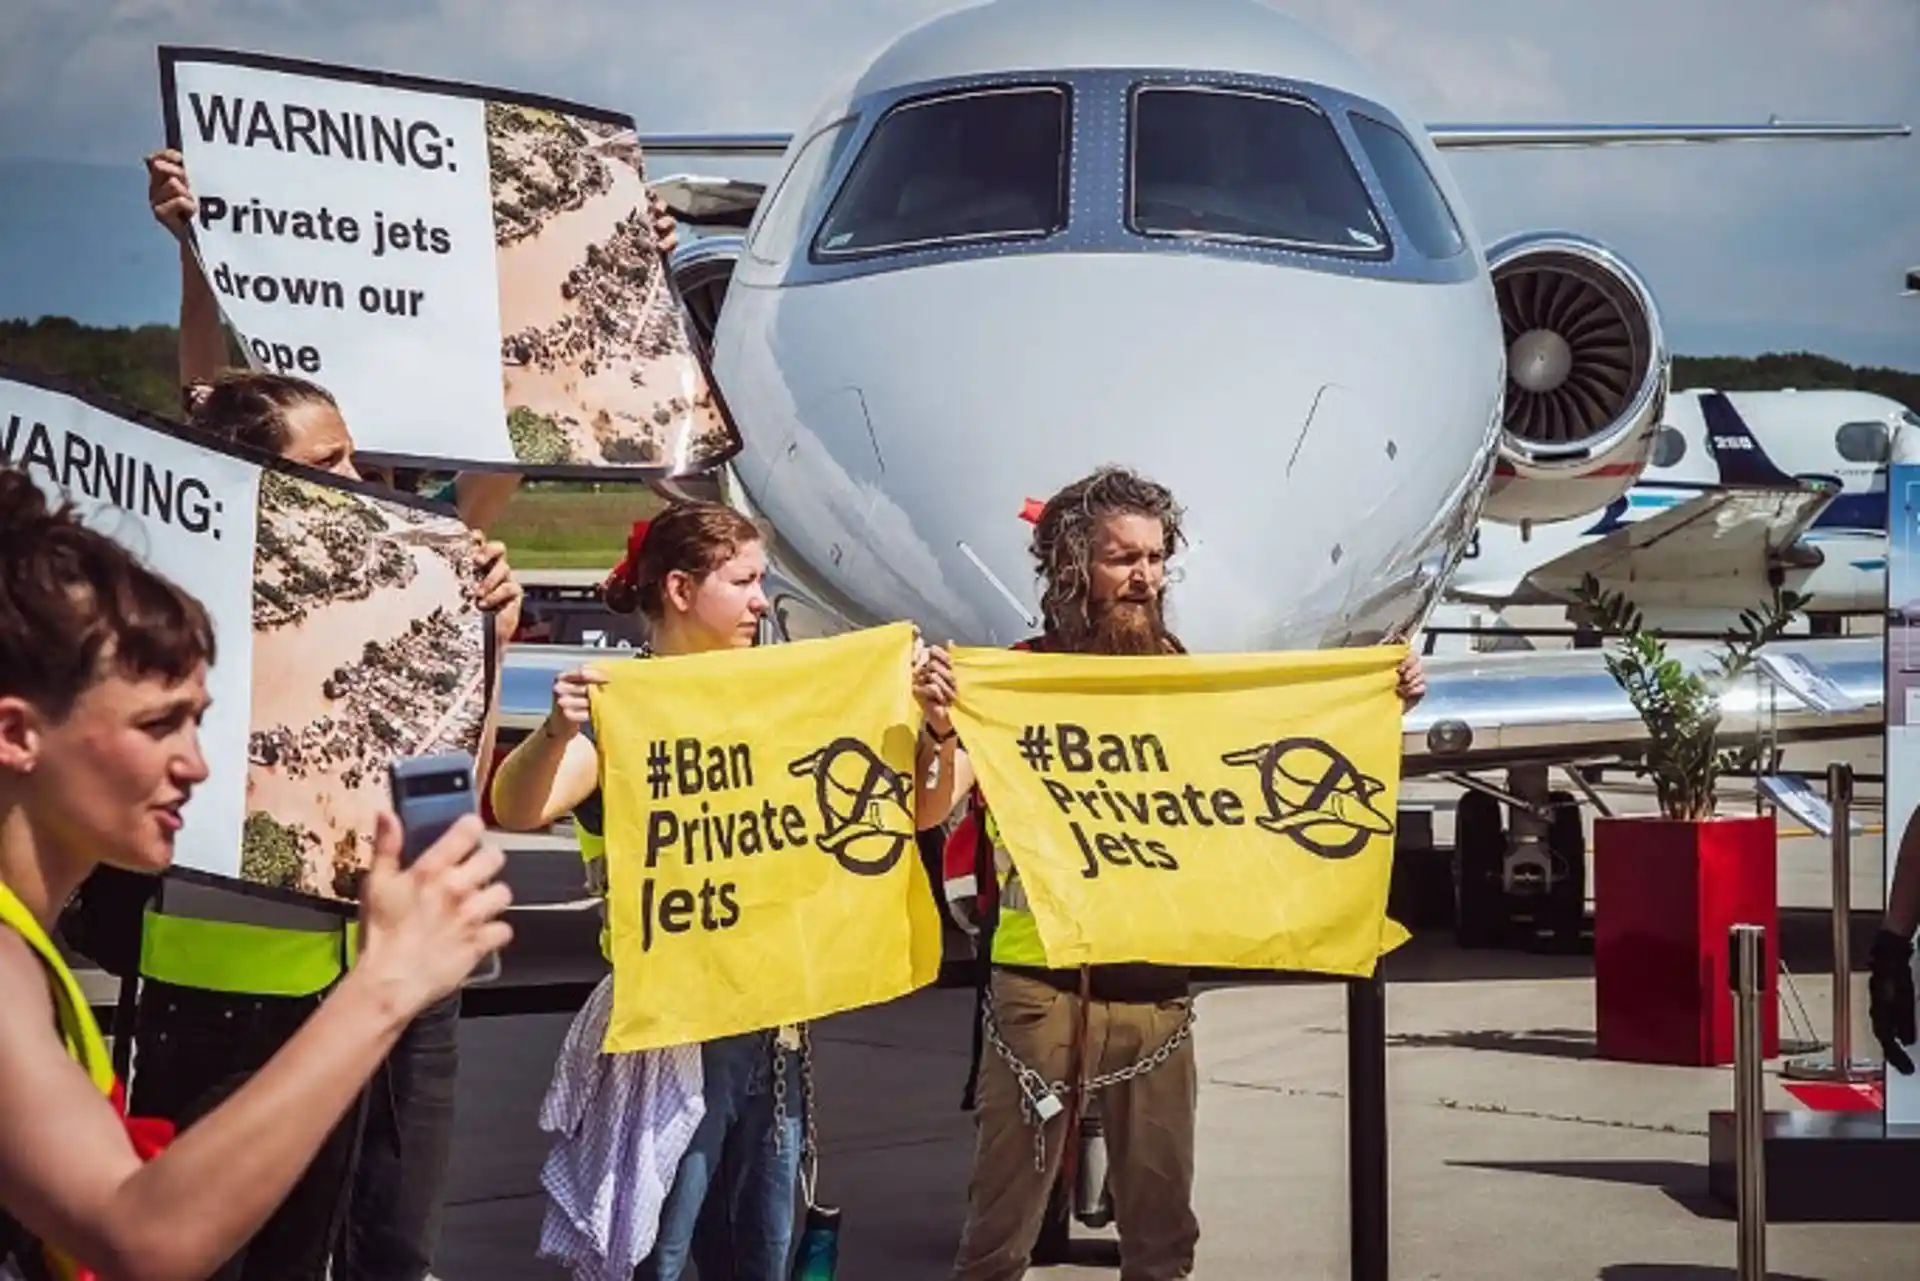 Activistas bloquean el acceso a la mayor feria de la aviación privada en Europa / Foto: Greenpeace